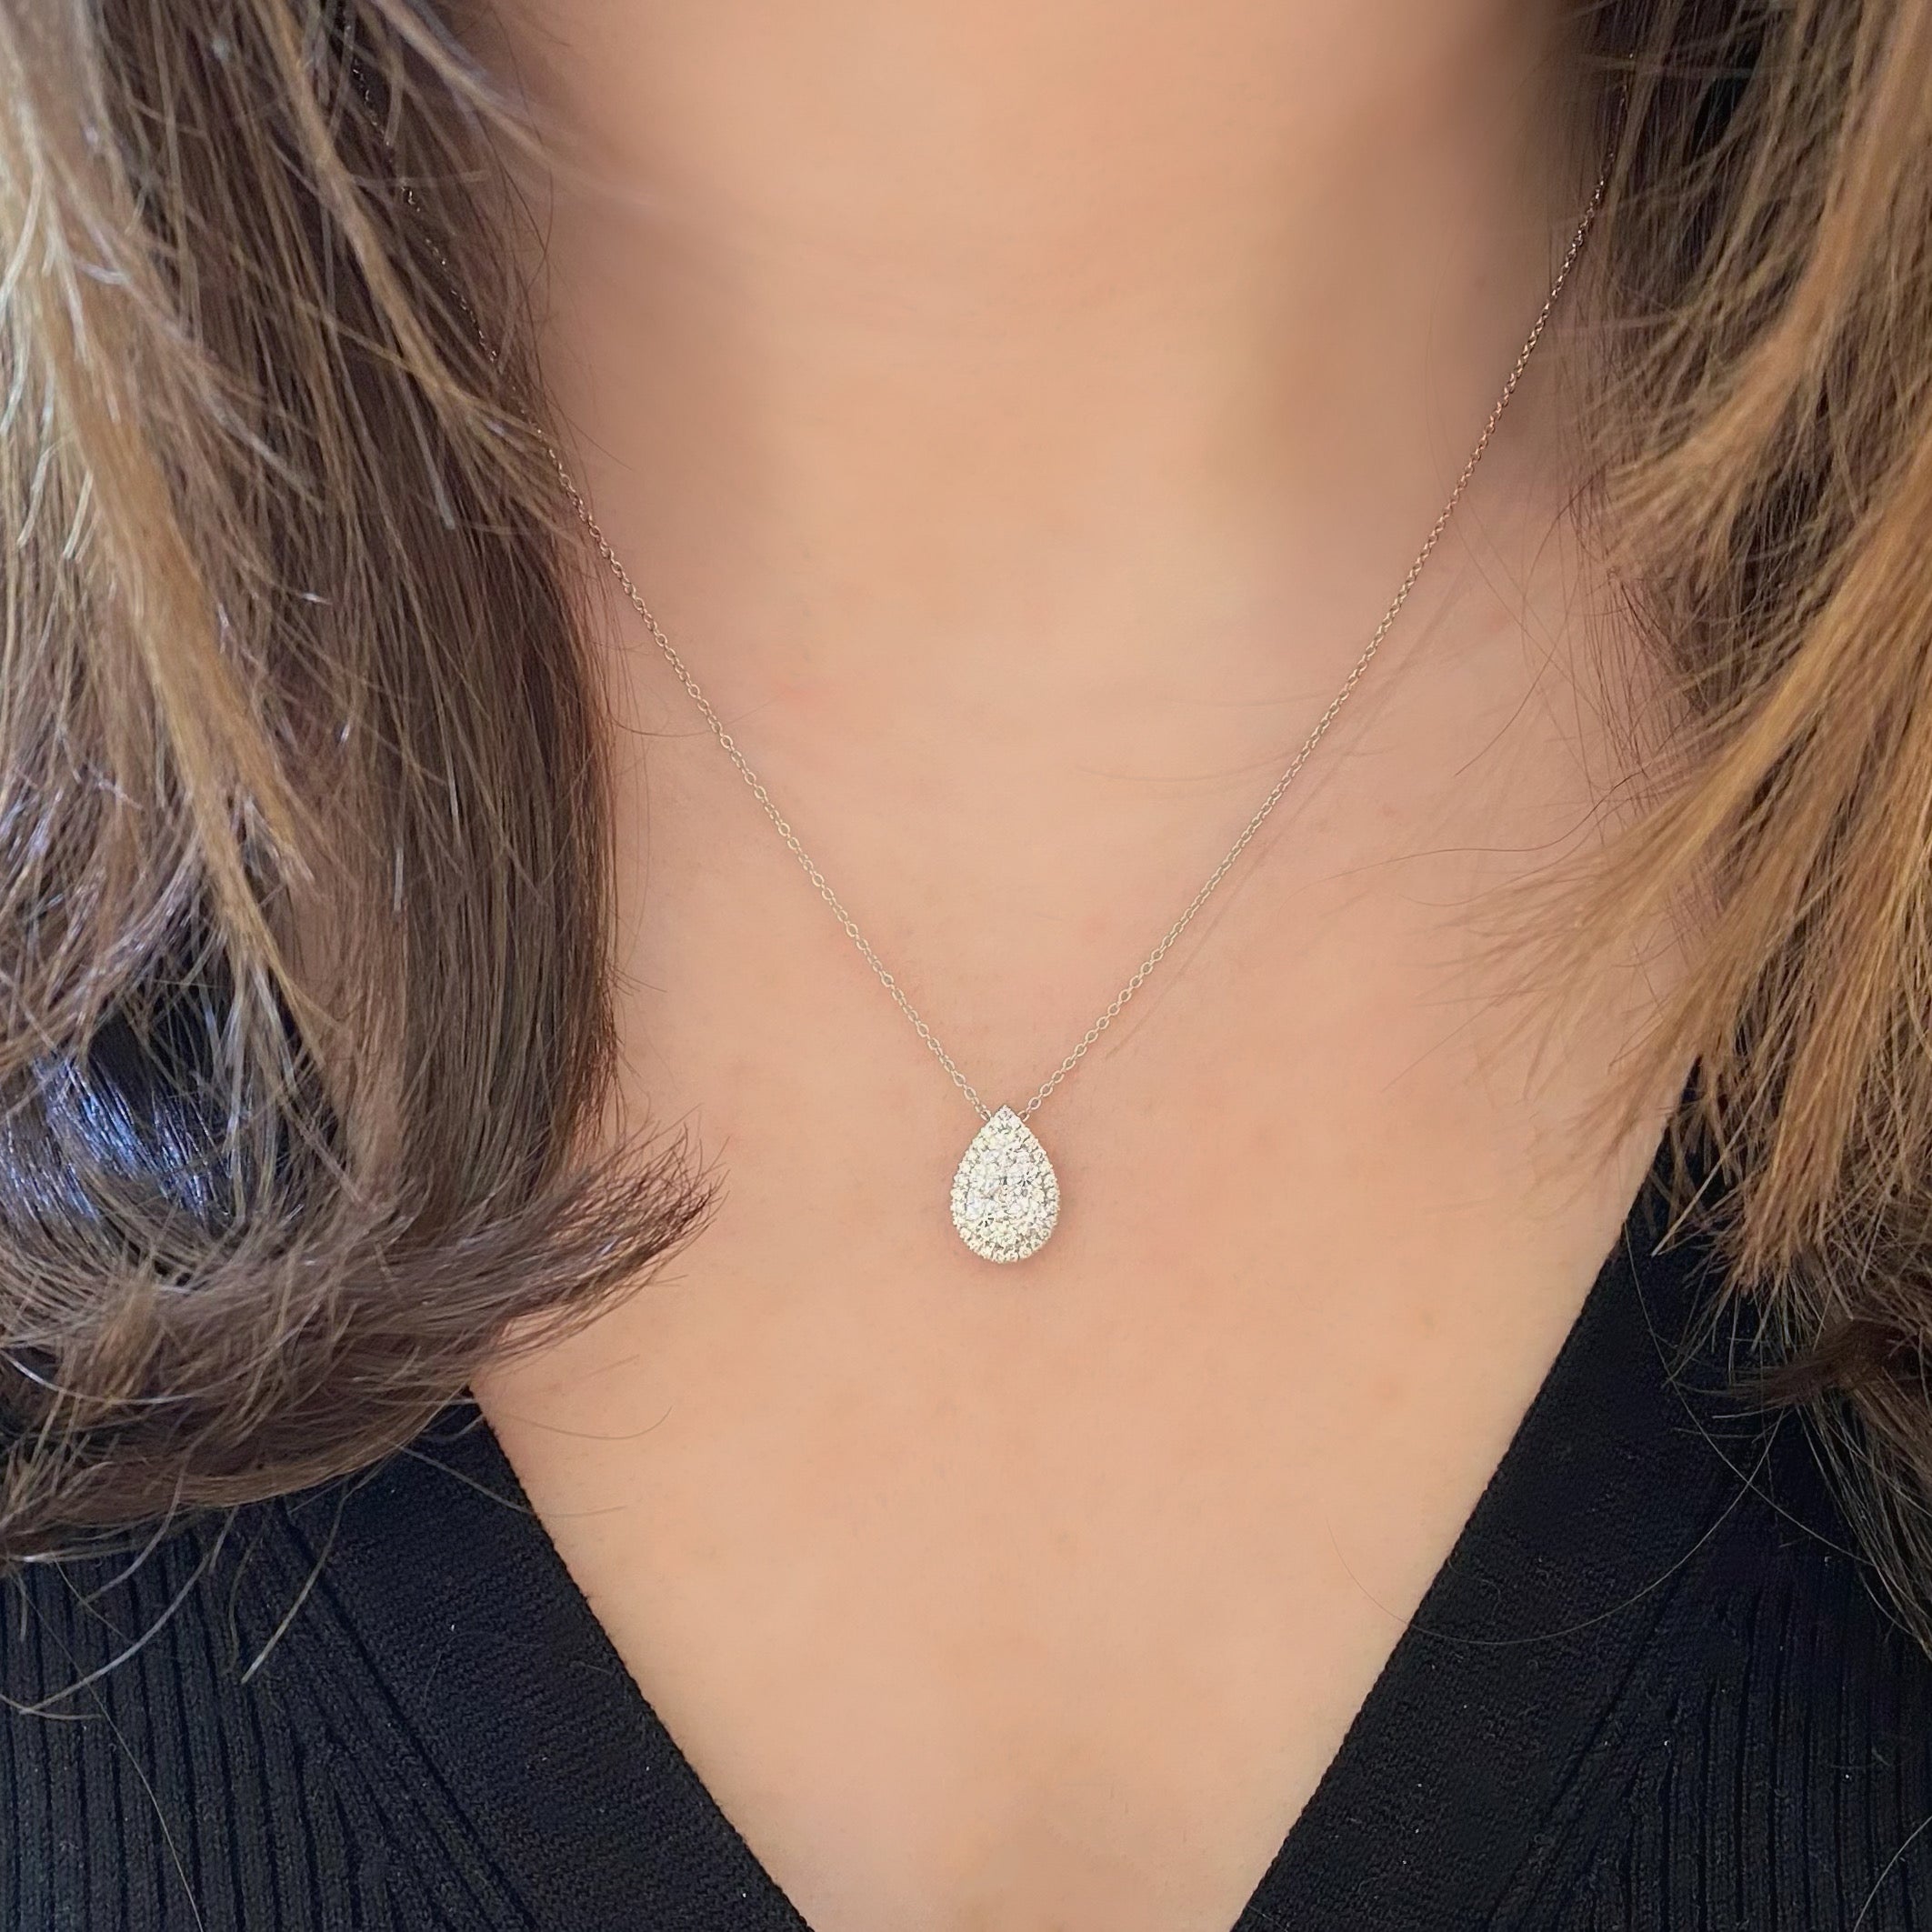 Elora Gems Teardrop Necklace in Sapphire - j.hoffman's